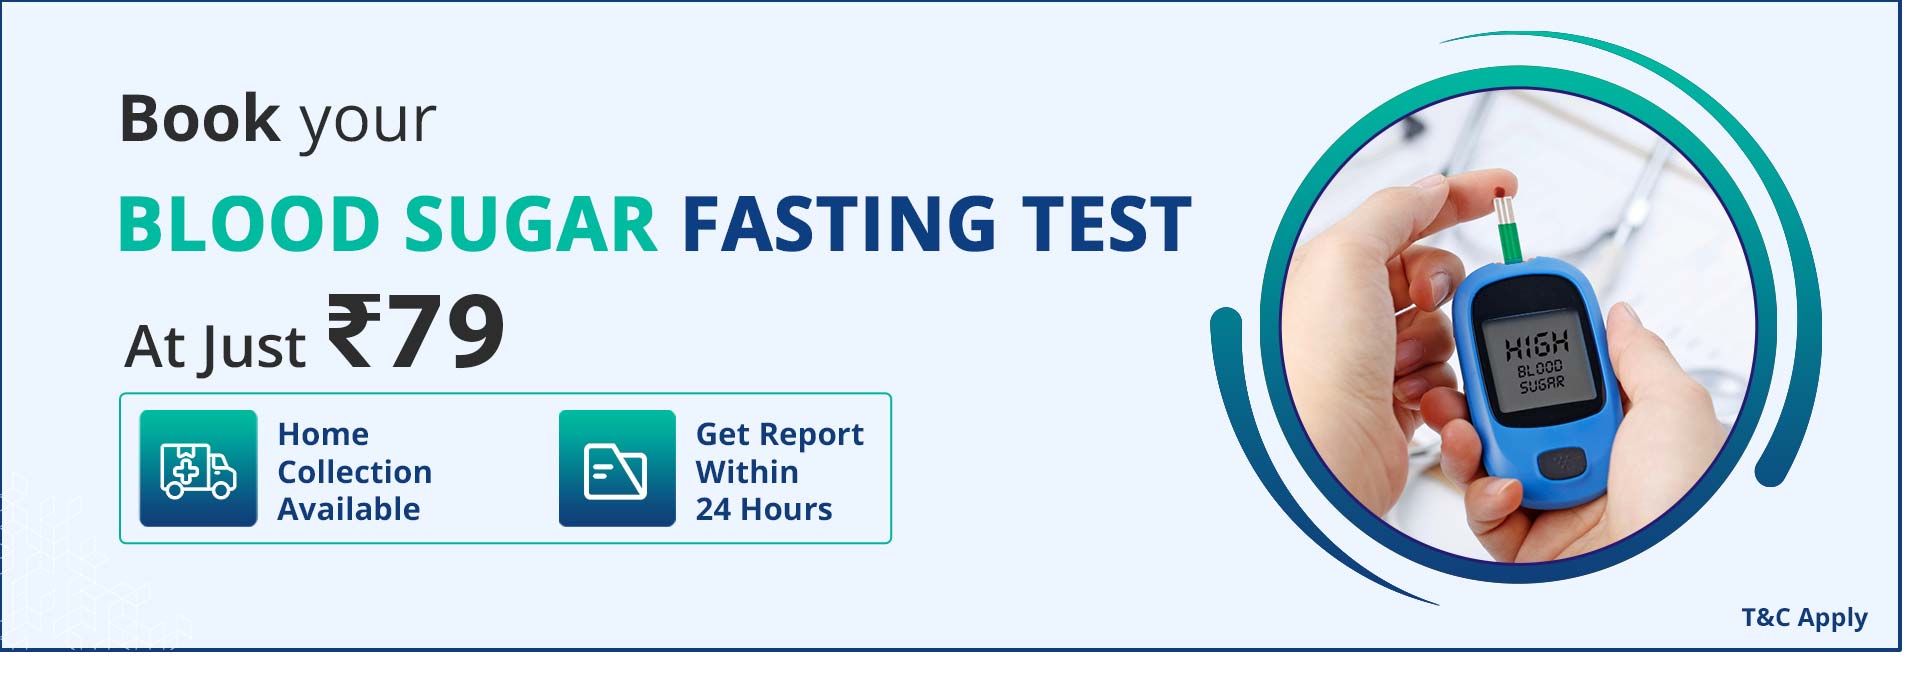 blood-sugar-fasting-test-blood-sugar-fasting-test-price-delhi-india